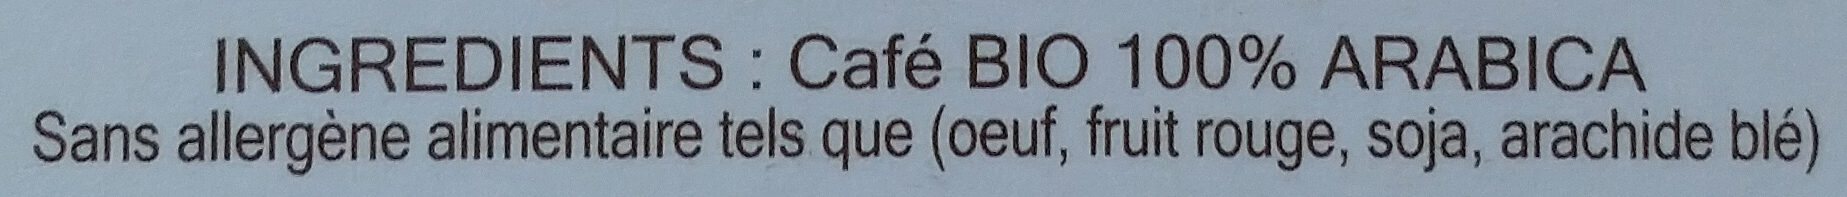 Café BIO Pérou x 10 capsules biodégradables - Ingredients - fr